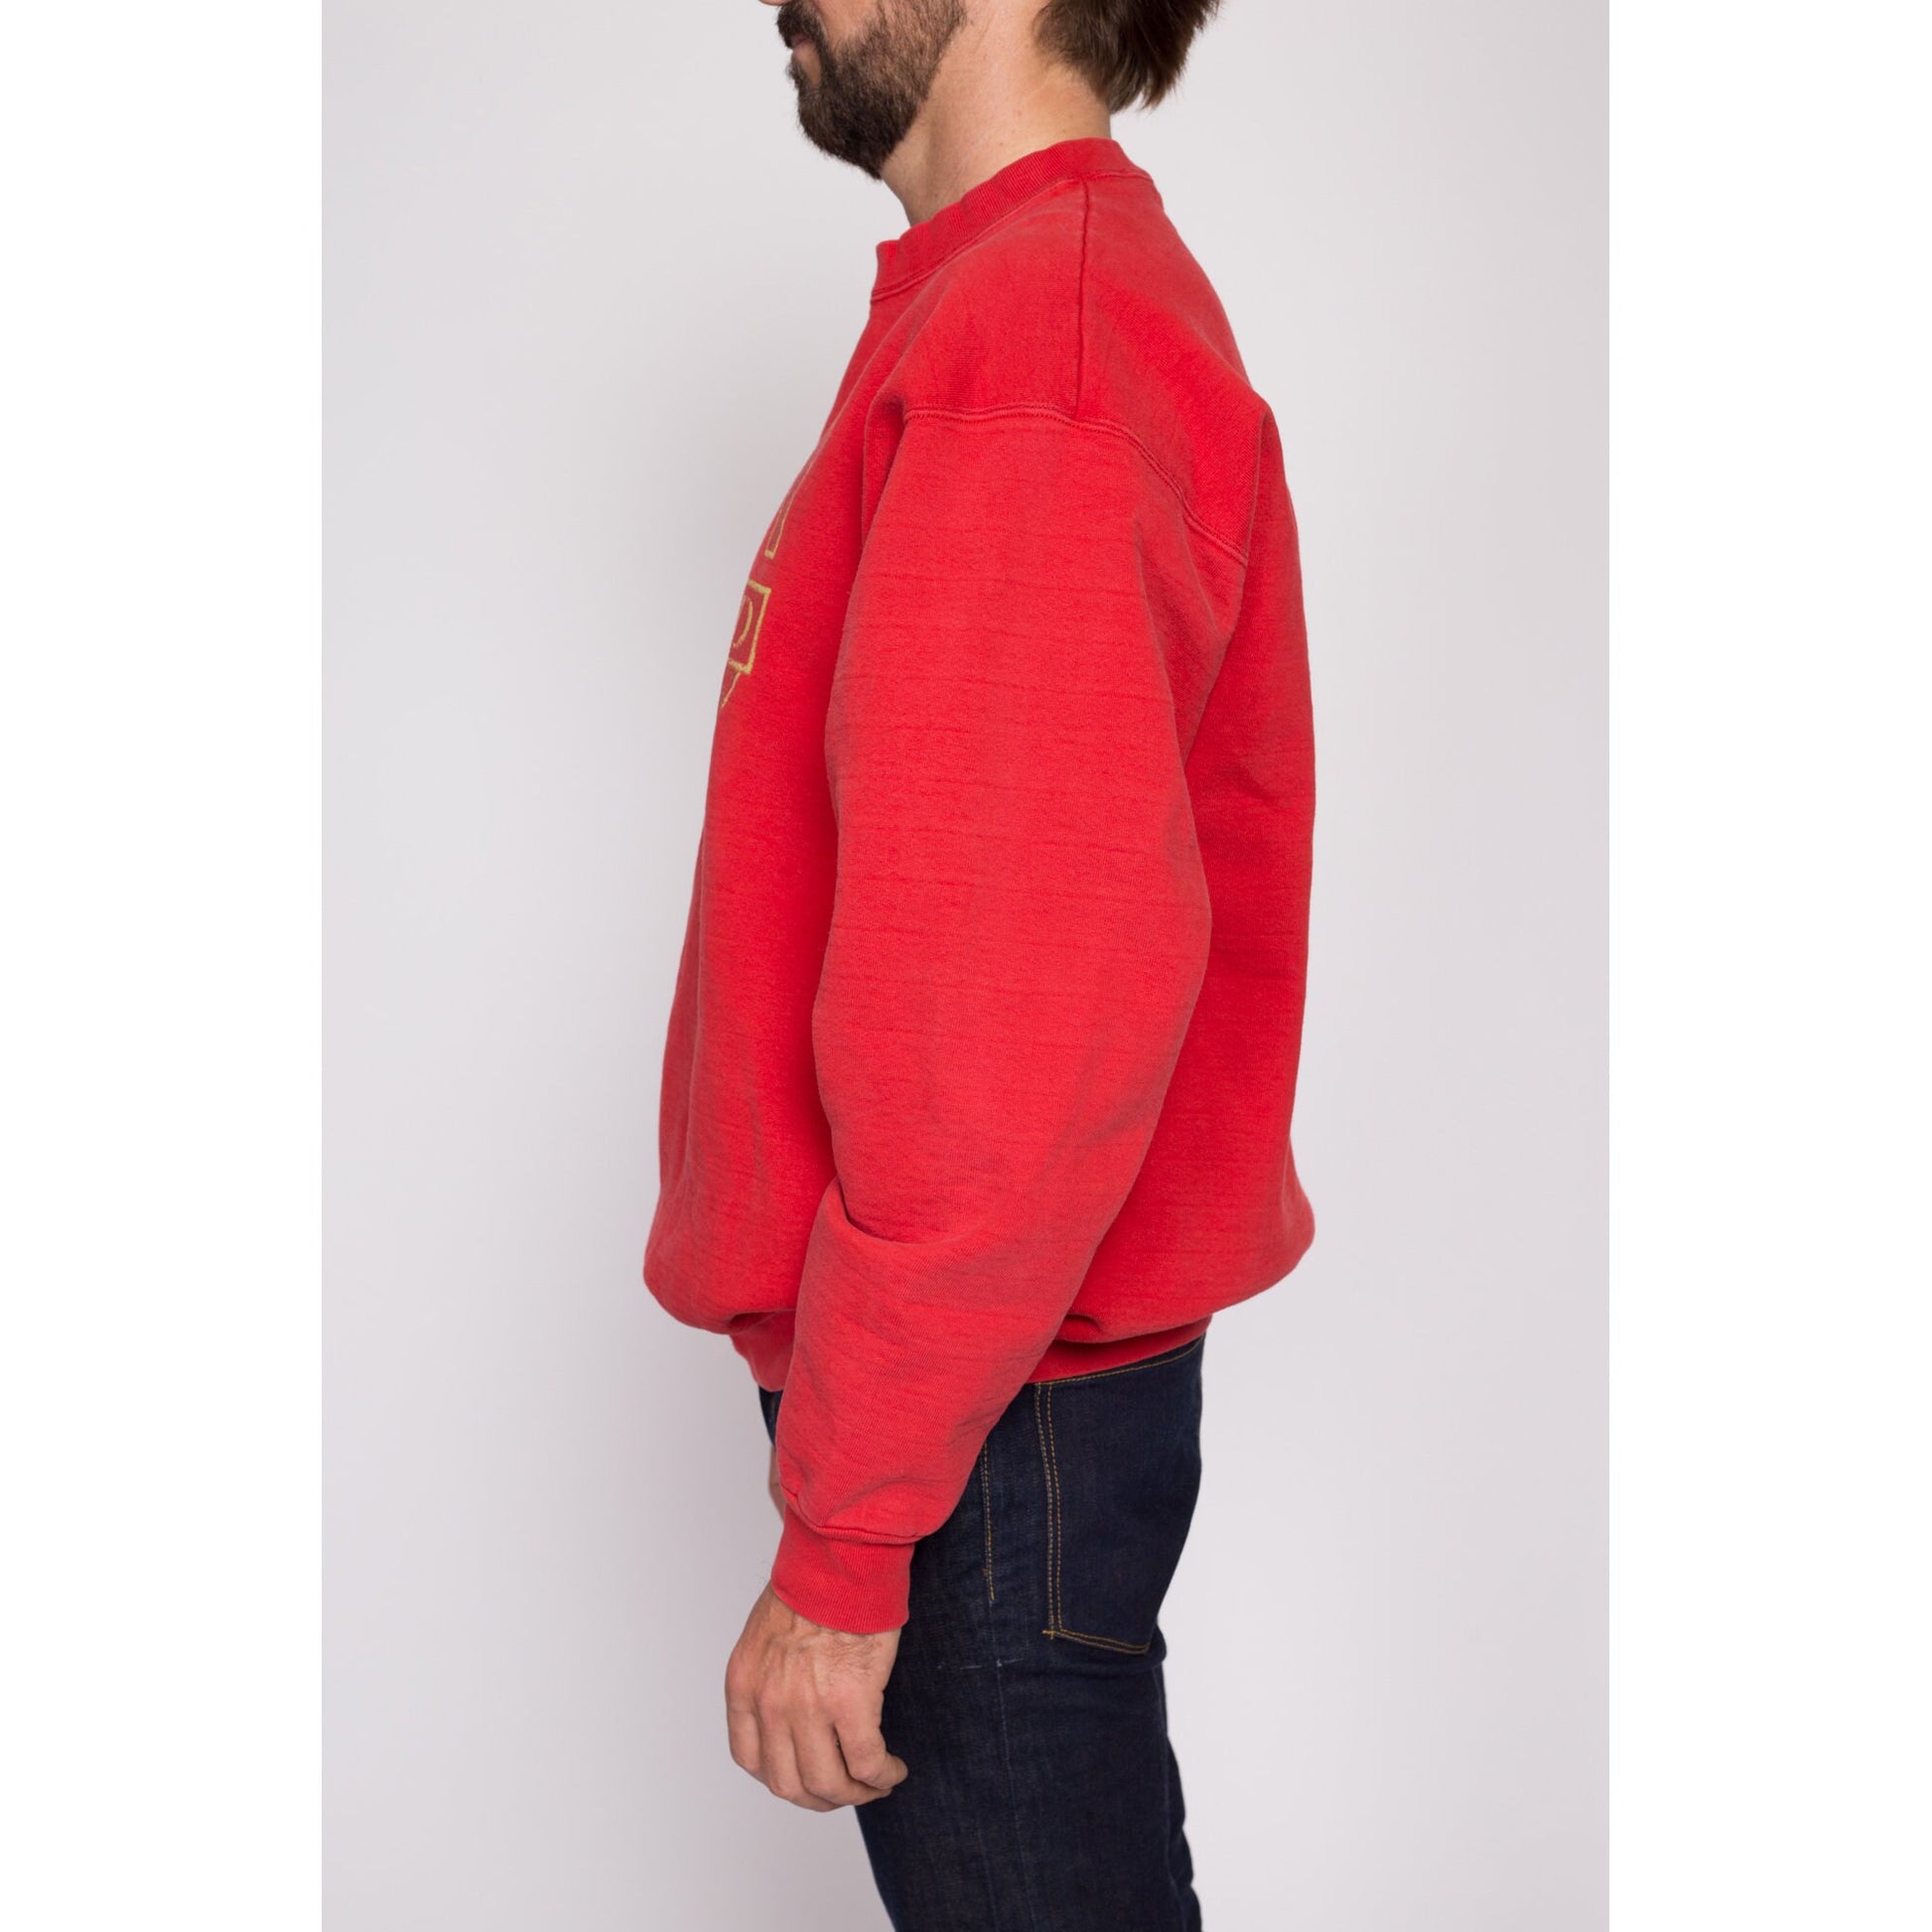 XL| 90s Cape Cod Sweatshirt - Men's XL | Vintage Red Massachusetts Graphic Tourist Crewneck